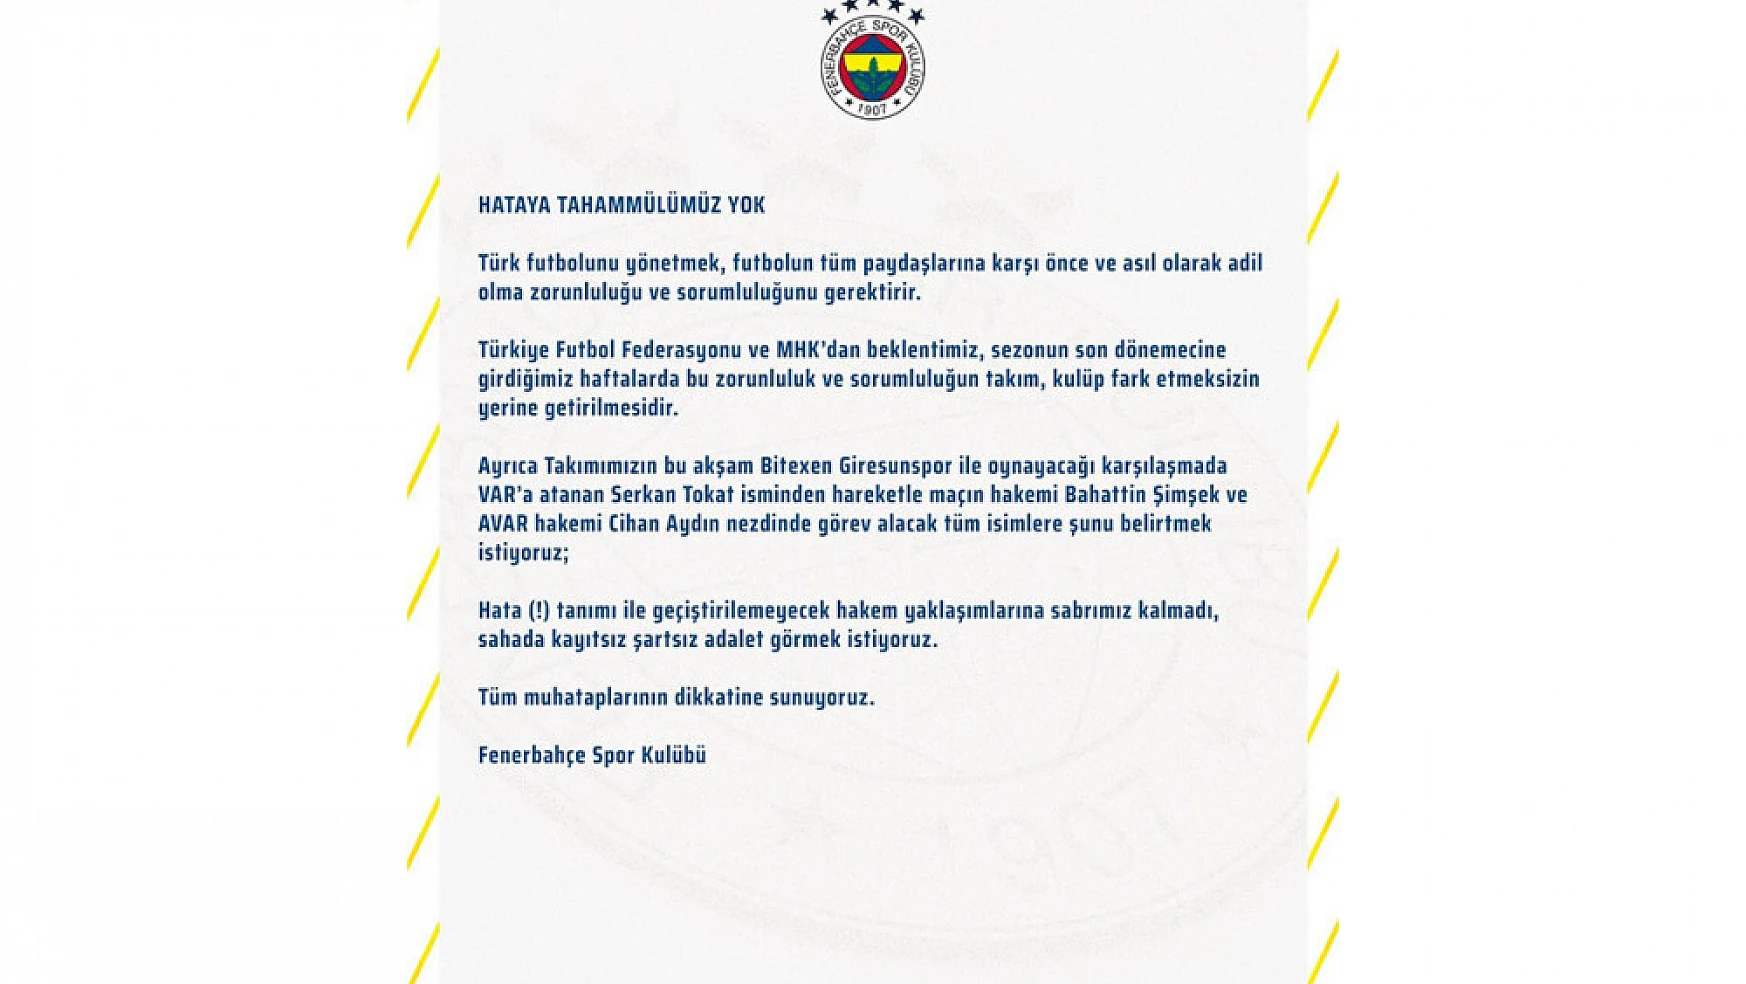 Fenerbahçe: 'Hataya tahammülümüz yok'